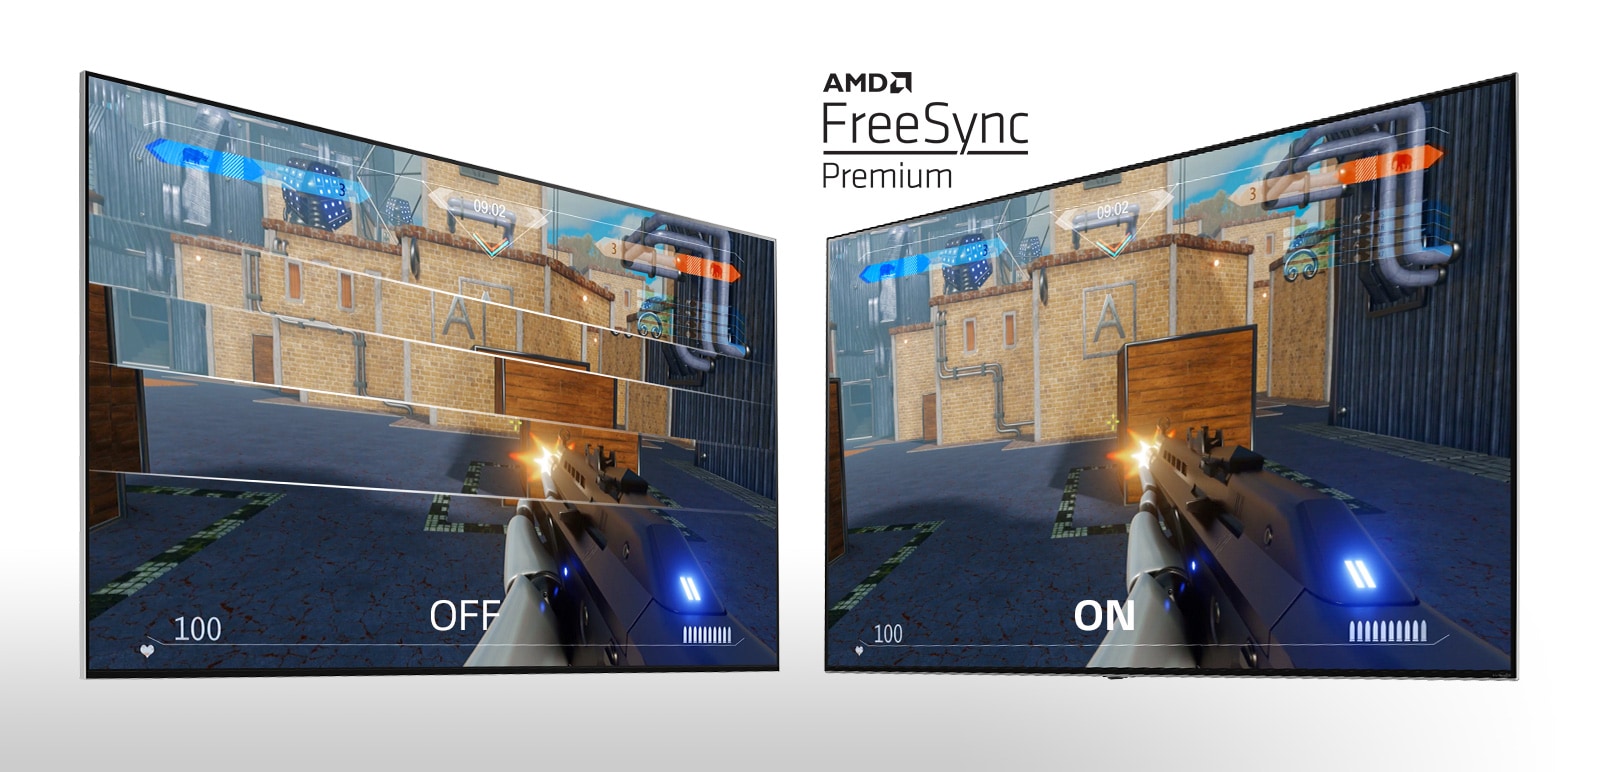 شاشتا تلفاز متجاورتين تعرضان لعبة إطلاق نار.  تظهر الشاشة اليسرى FreeSync في وضع إيقاف التشغيل، بينما تظهر الصورة اليمنى FreeSync في وضع التشغيل. 